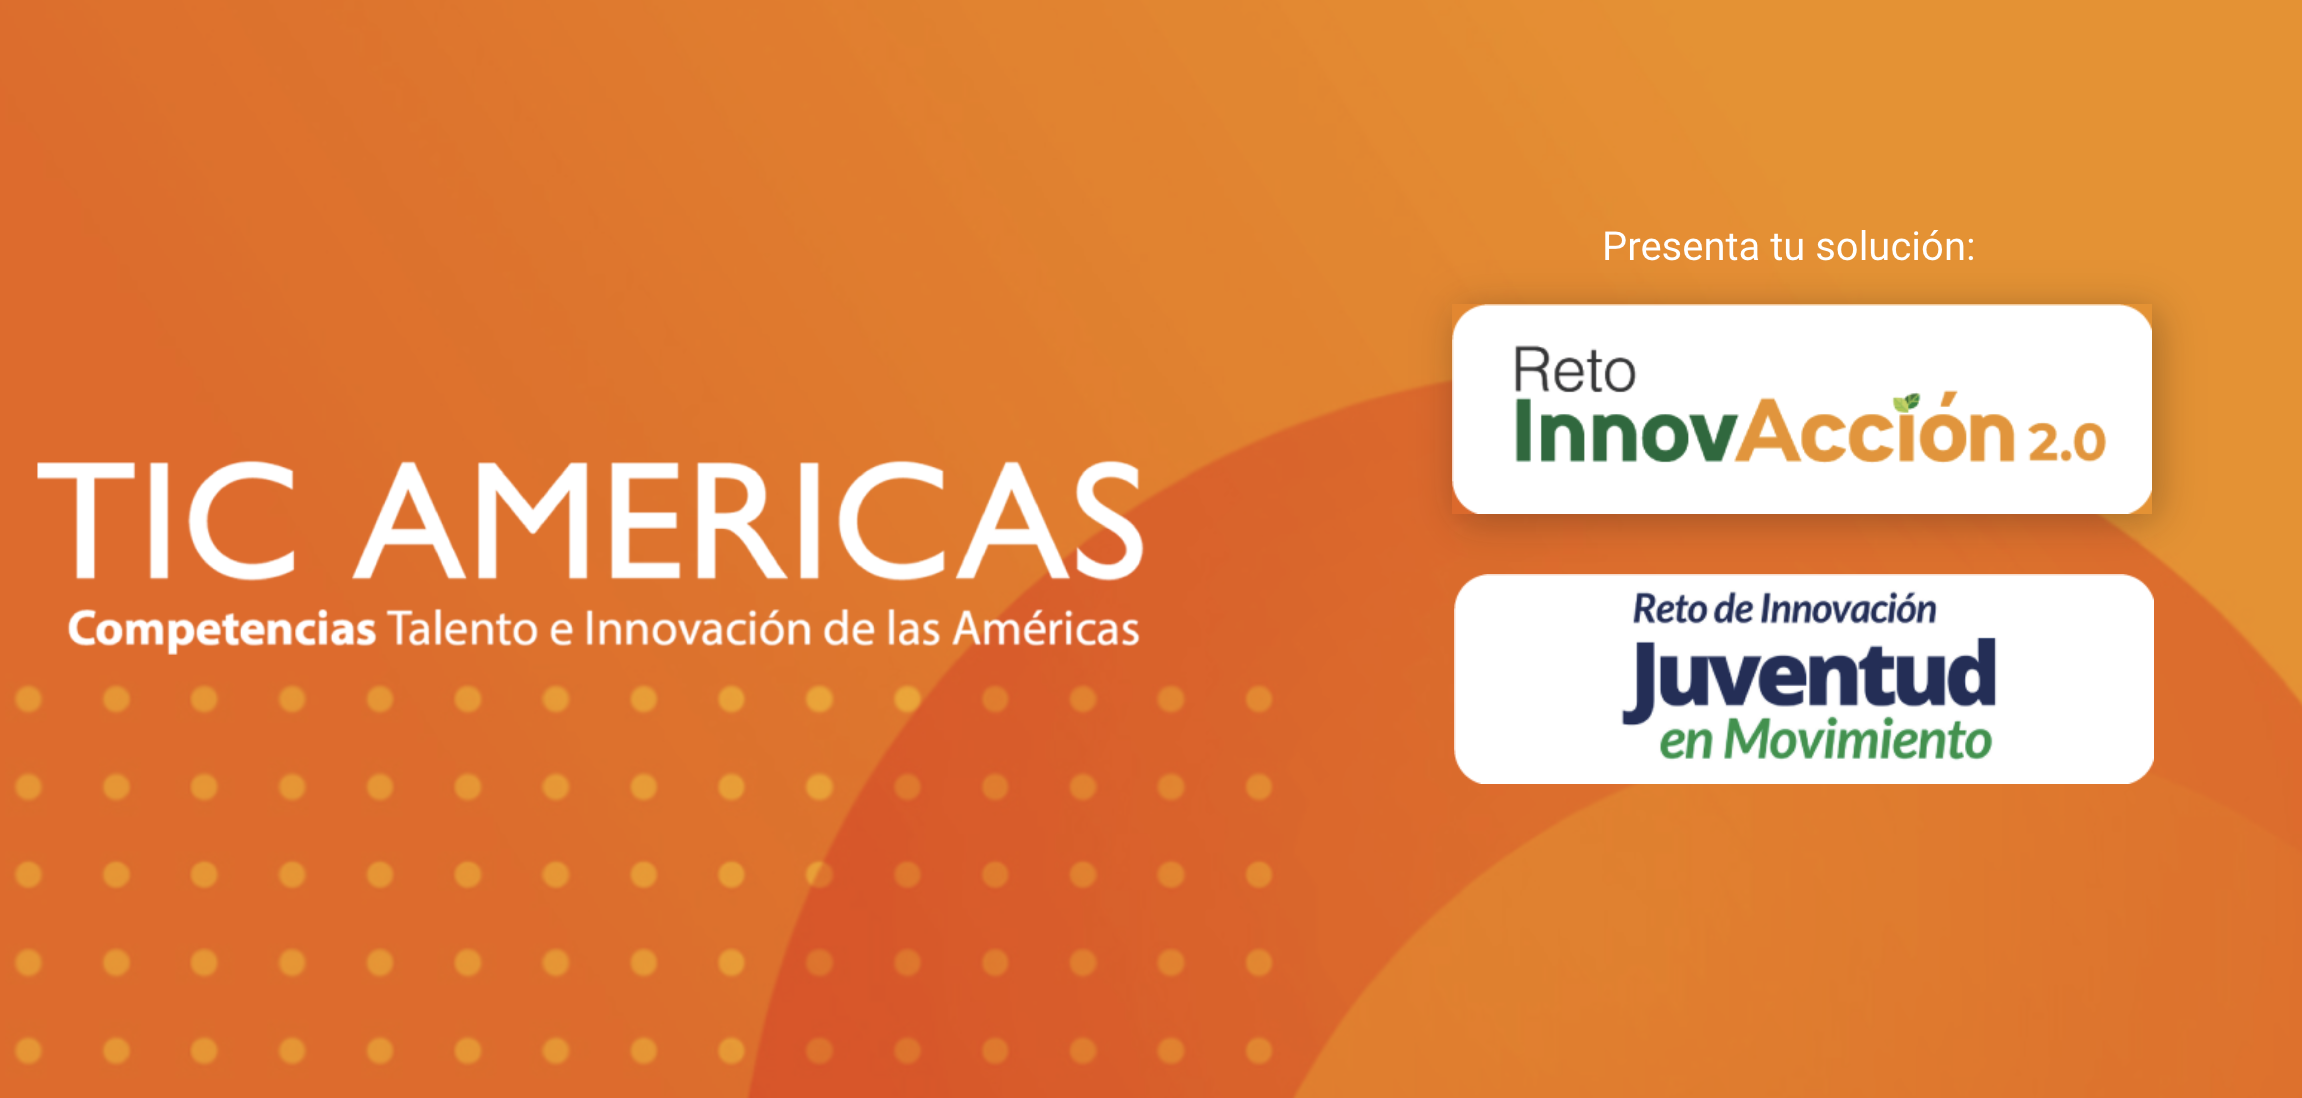 Retos Tic Americas - InnovAccion 2.0